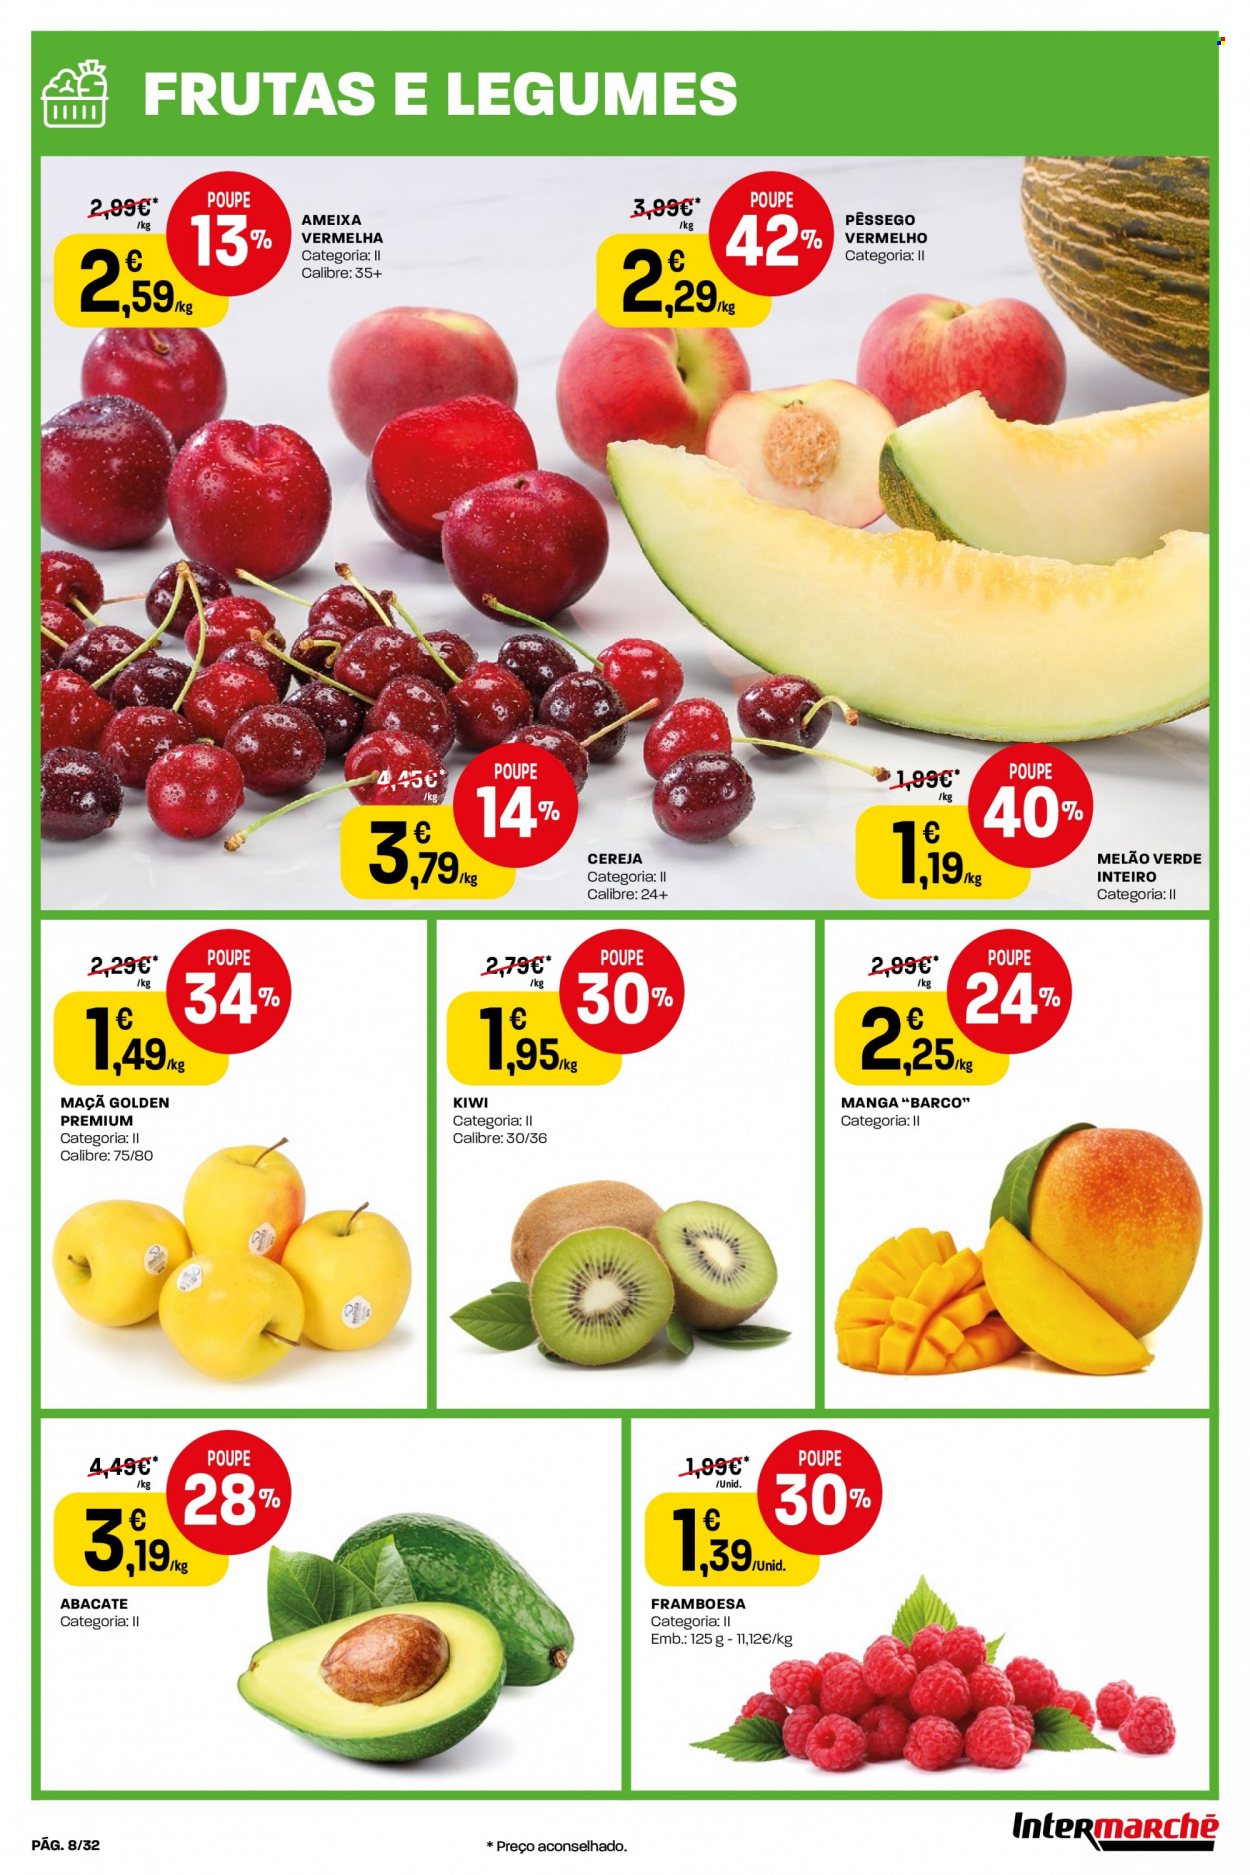 thumbnail - Folheto Intermarché - 30.6.2022 - 6.7.2022 - Produtos em promoção - maçã, kiwi, melão, abacate, cereja, framboesa, pêssego, manga, melão verde. Página 8.